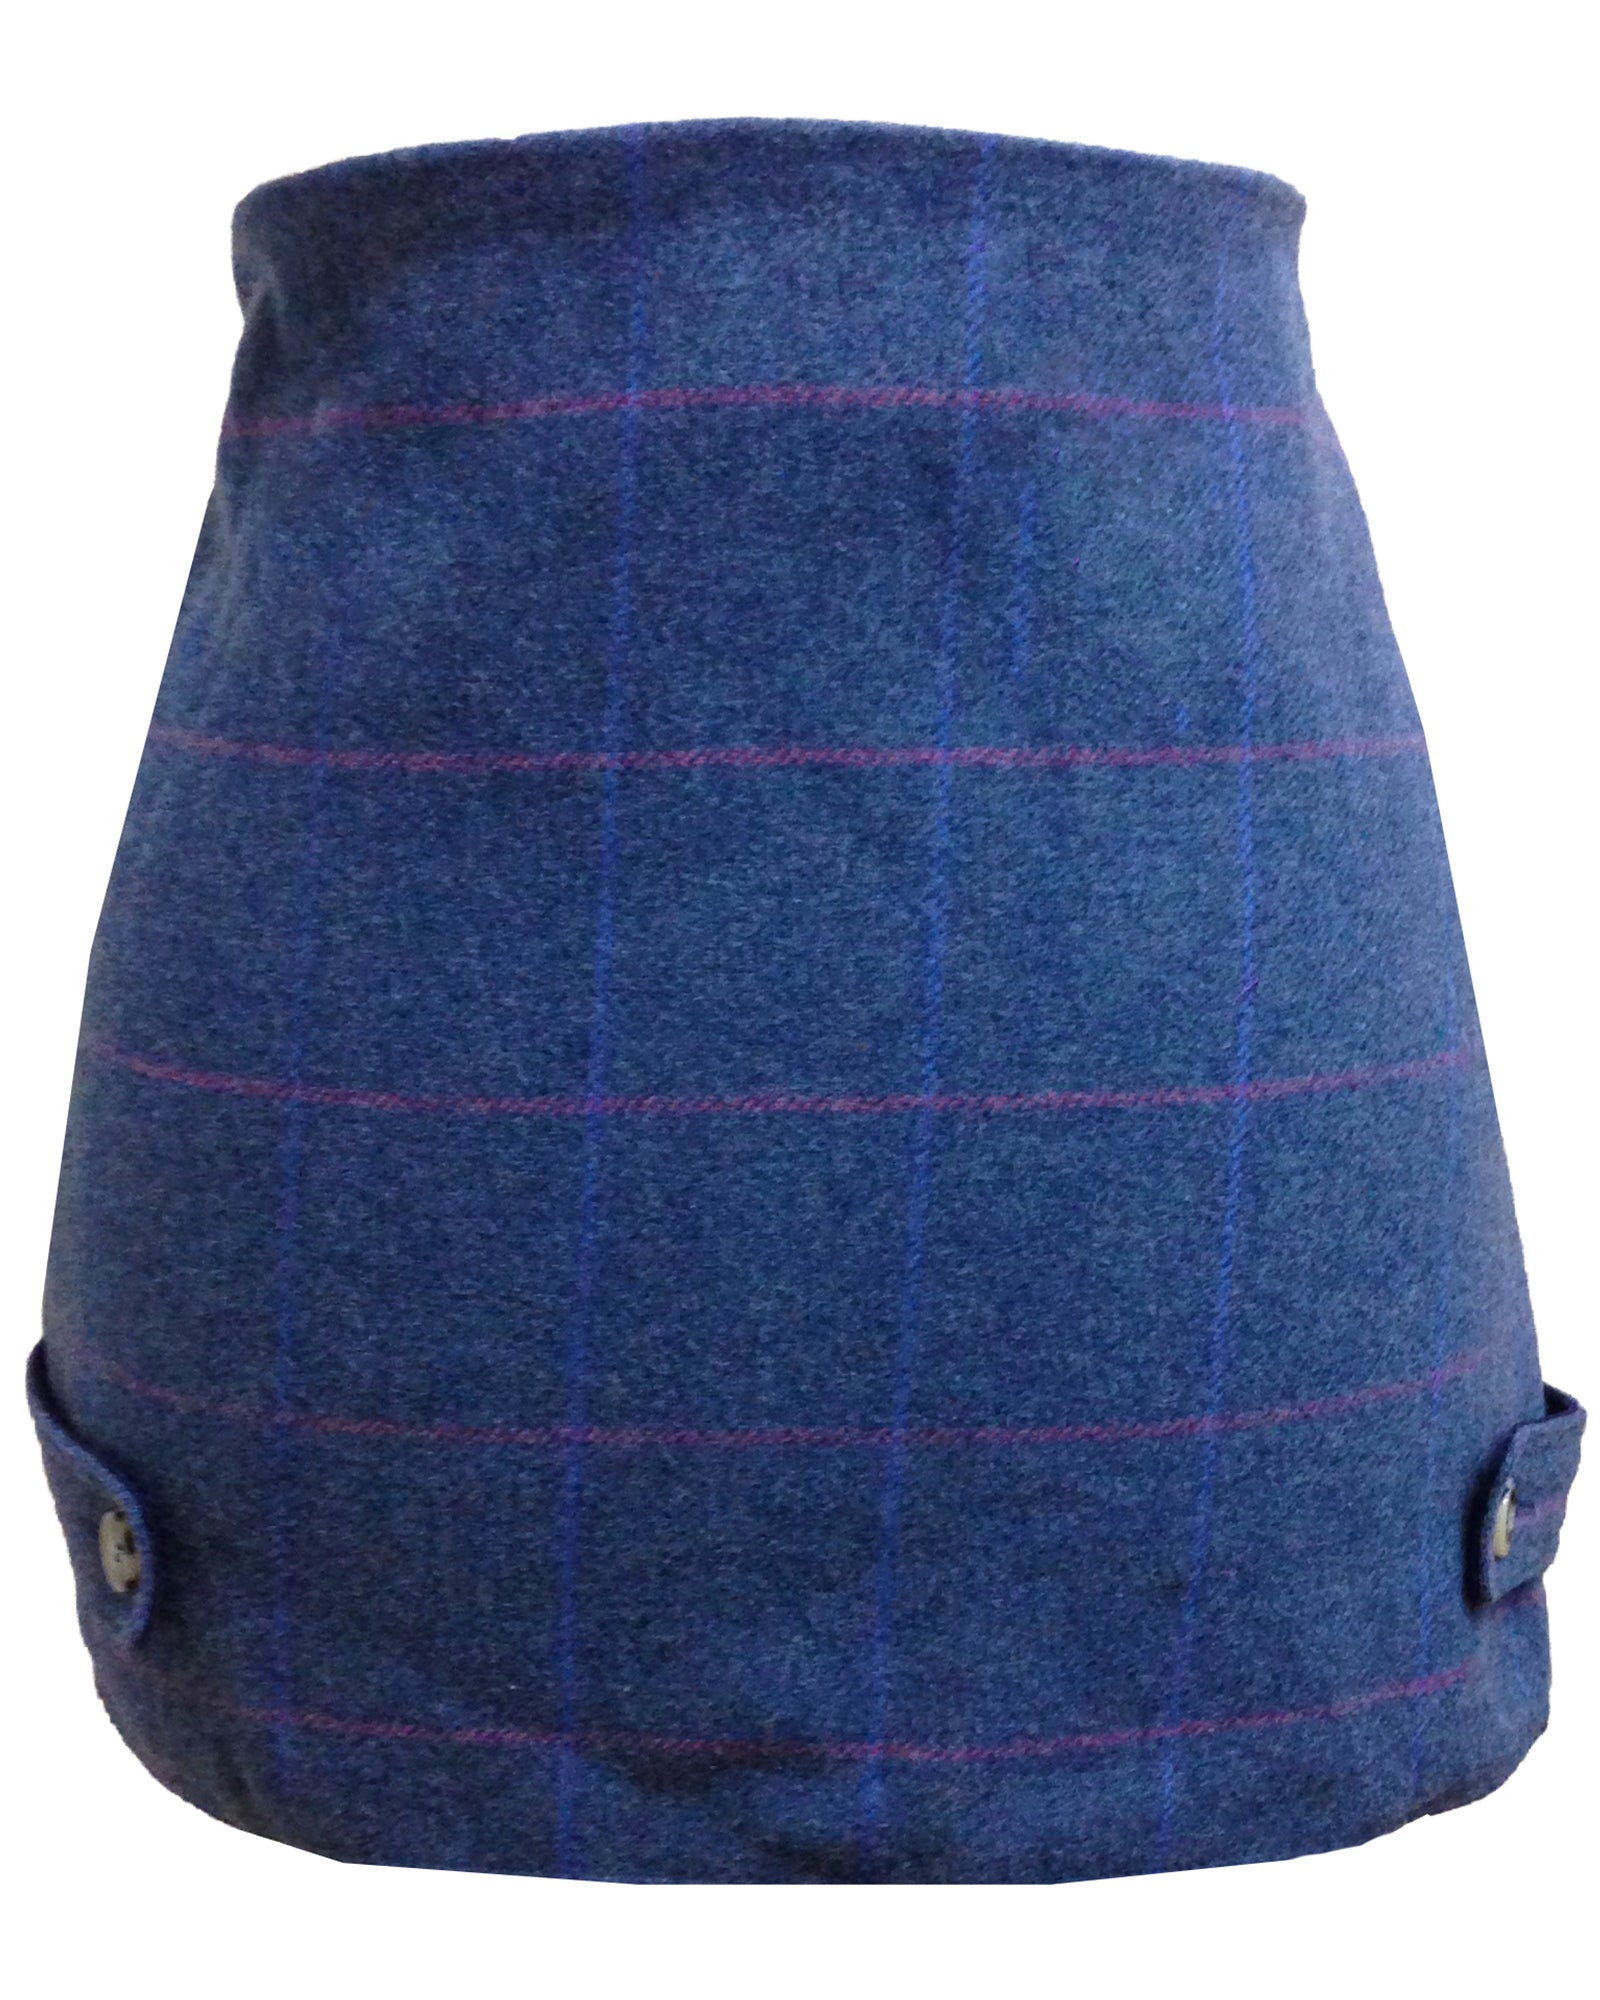 Regents View Women Premium Tweed Skirt.